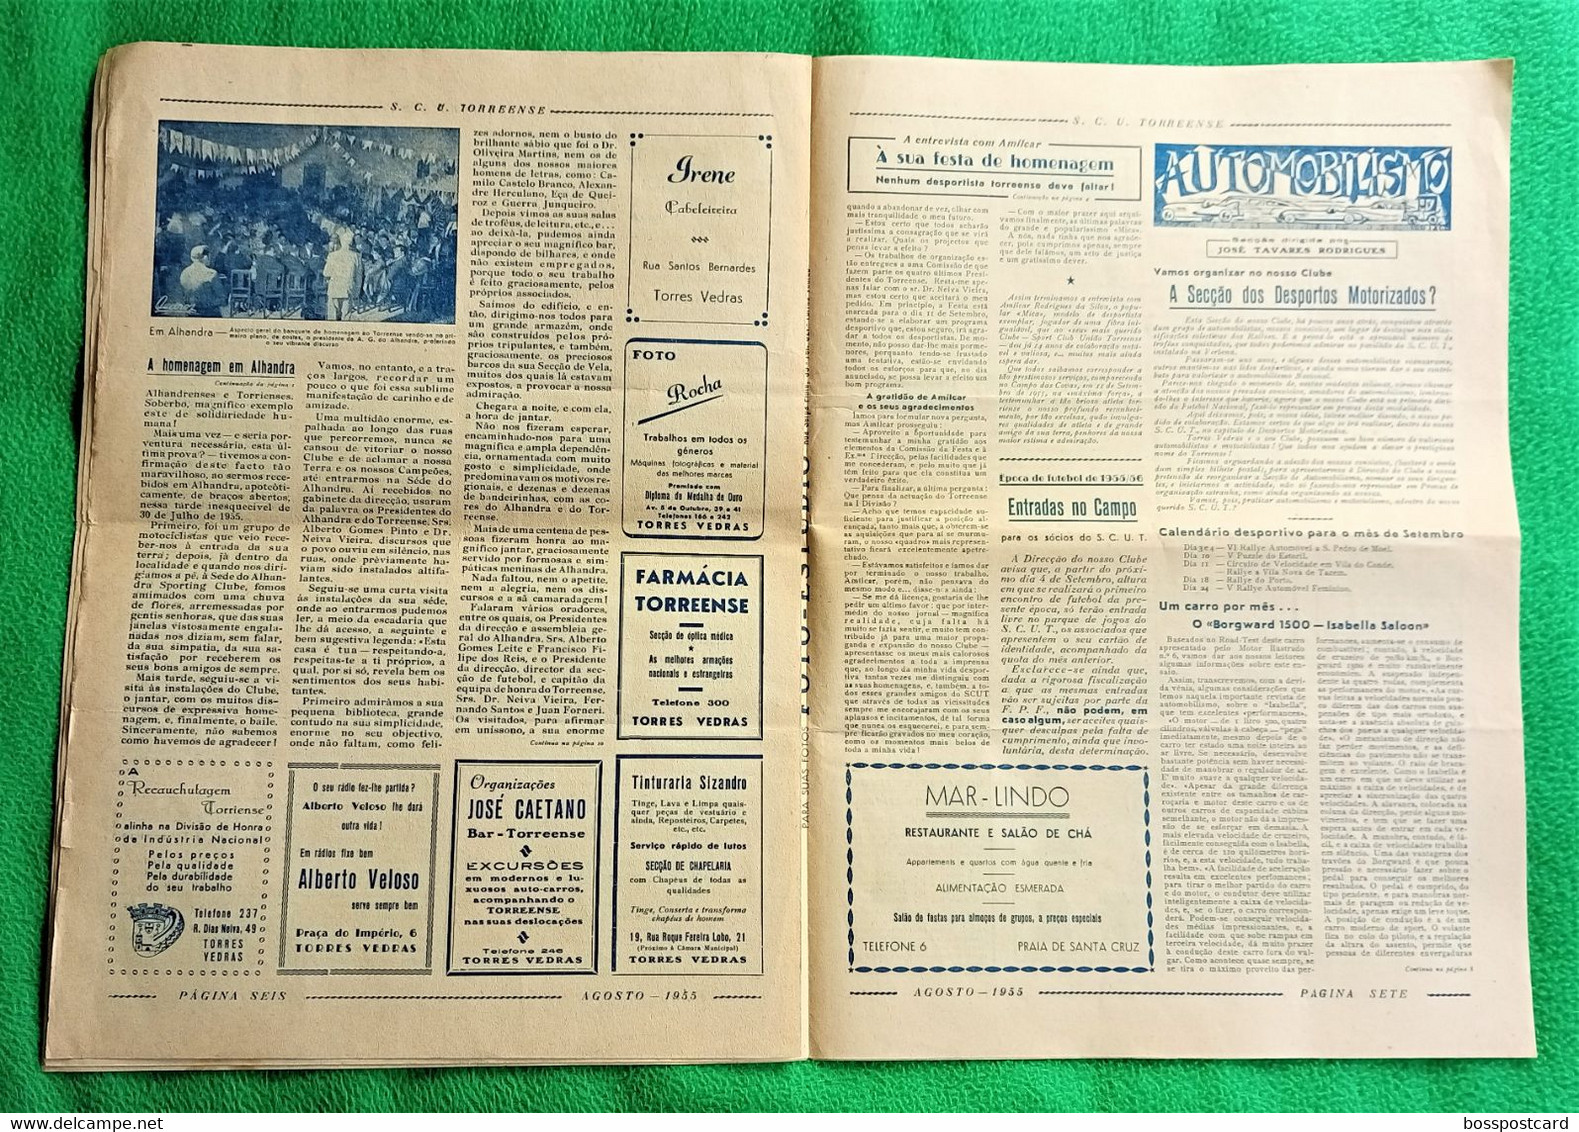 Torres Vedras - Jornal Torreense Nº 8 De Agosto De 1955 - Sport Club União, 1ª Divisão - Futebol - Estádio - Allgemeine Literatur